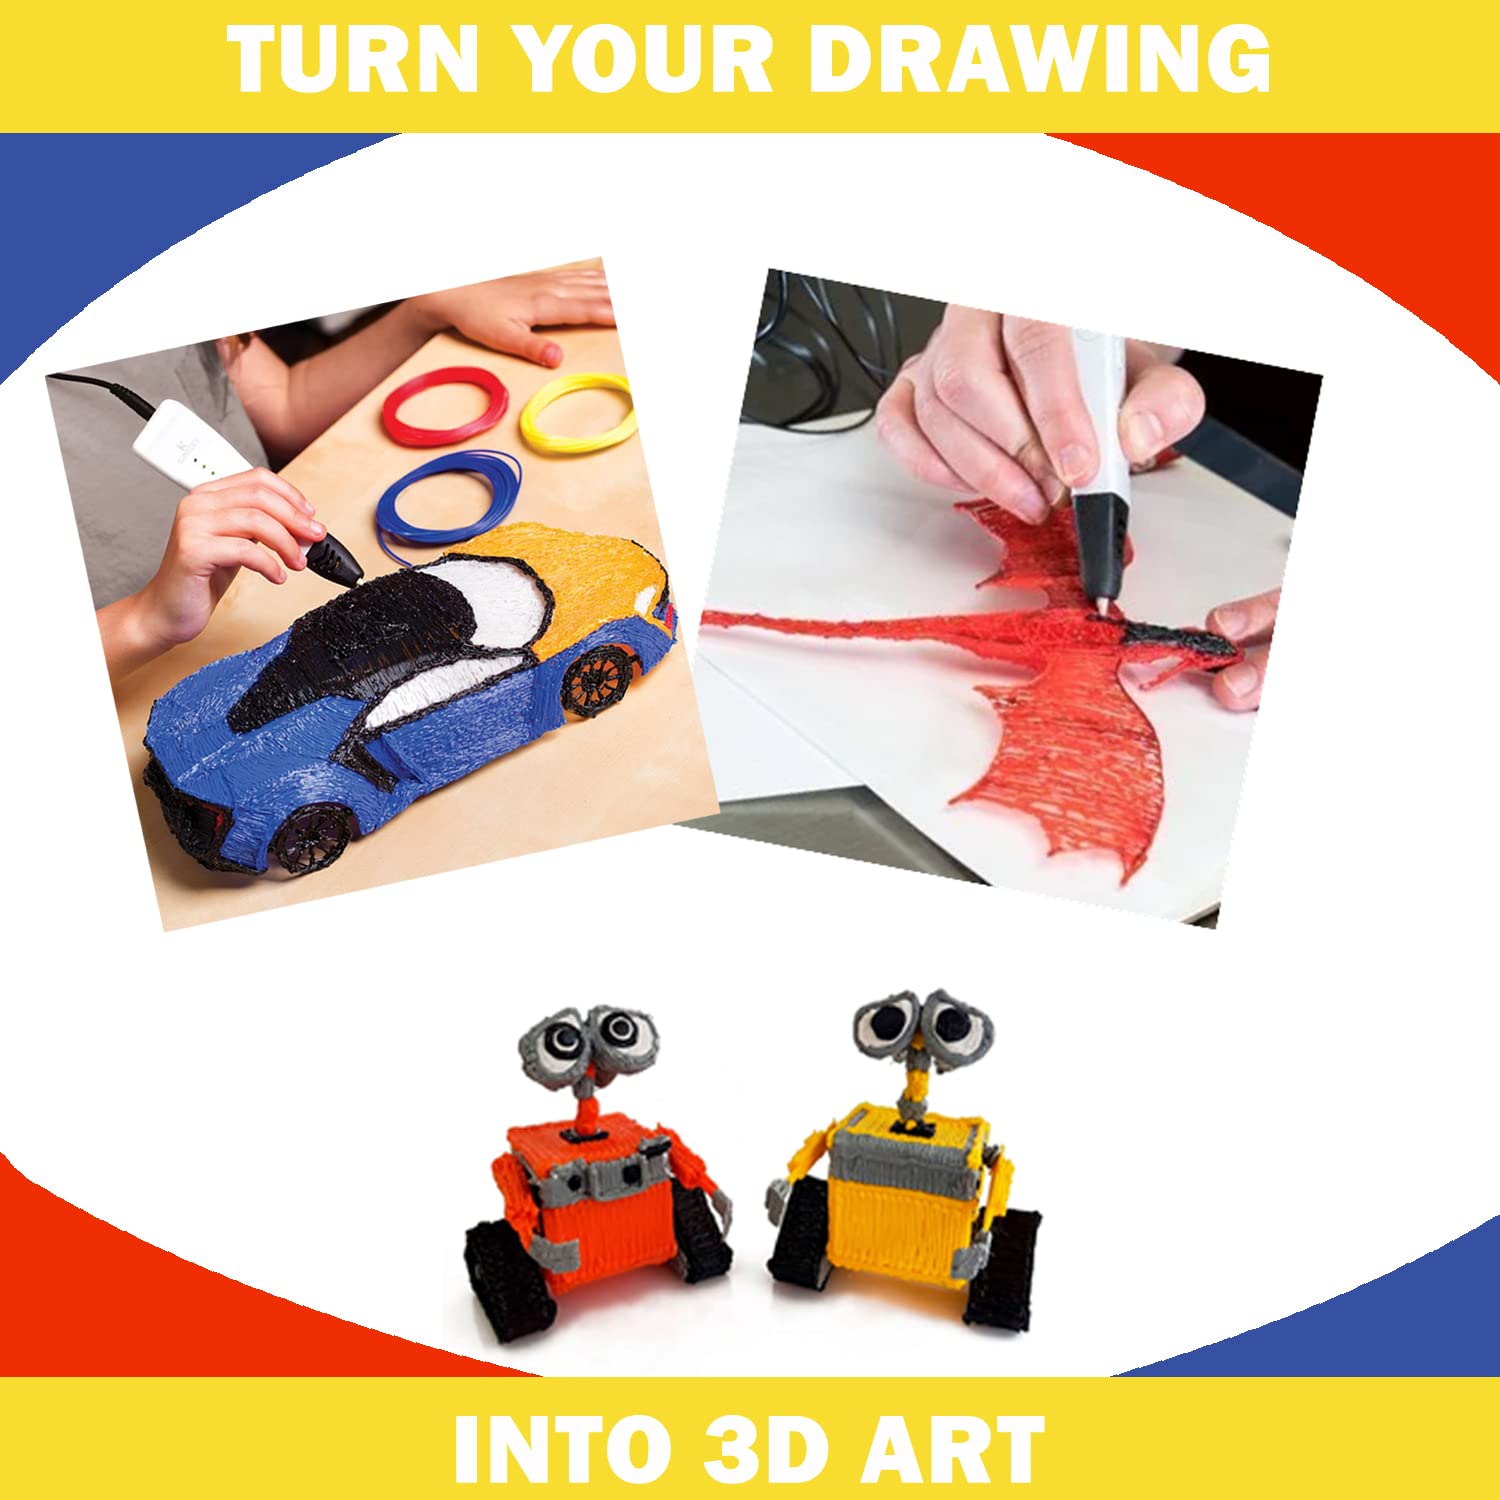 3D Stift mit Filamenten, Einsteigermodell für Kinder und Erwachsene